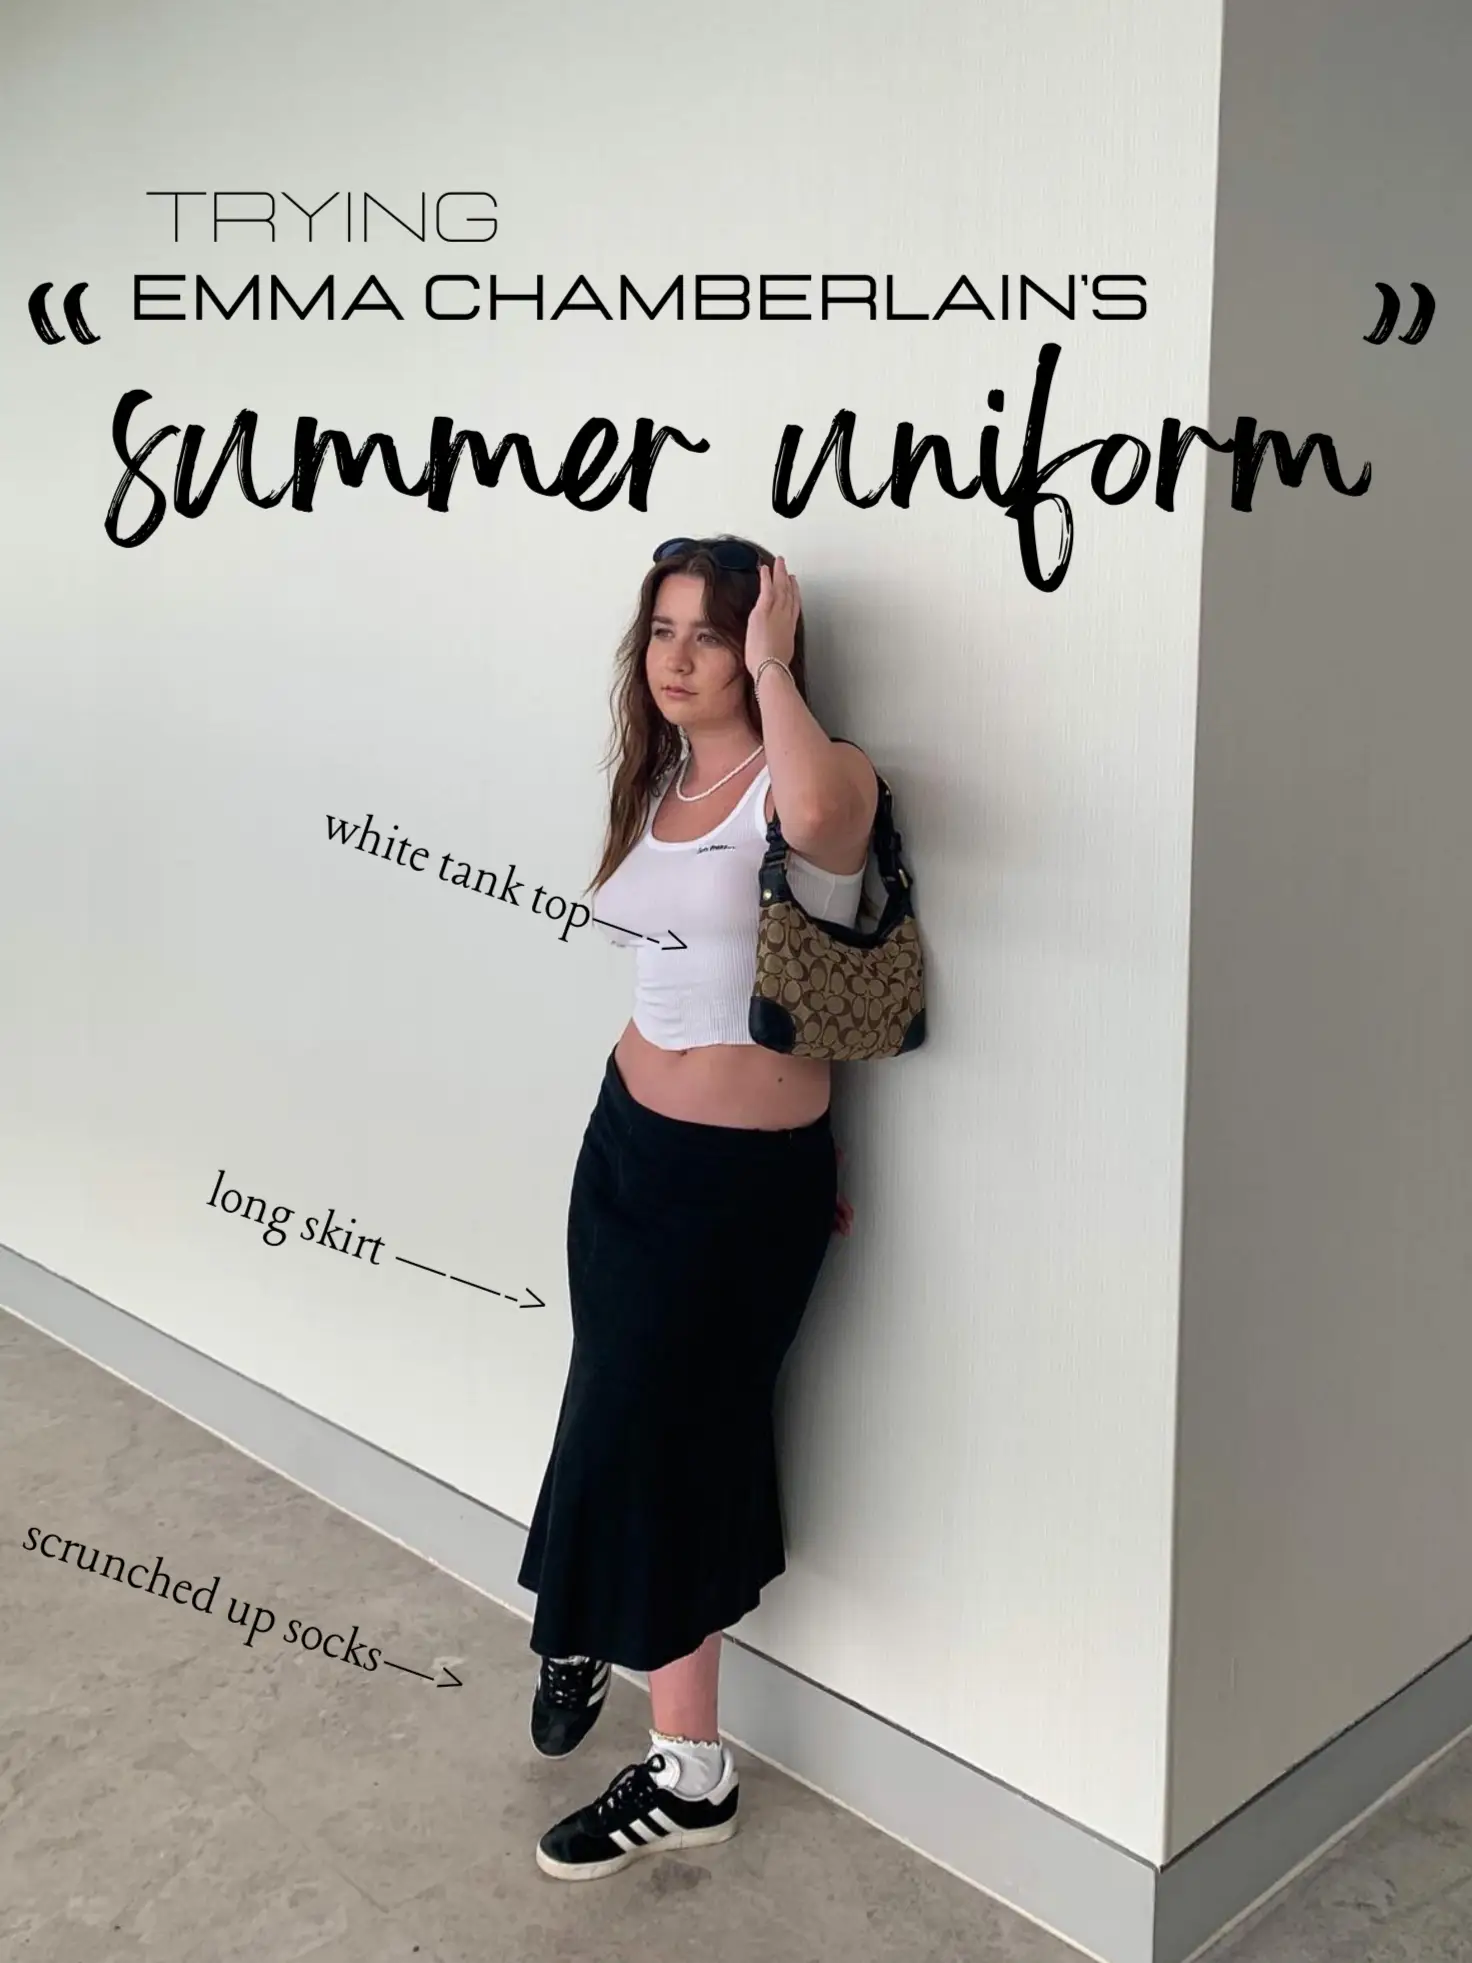 Emma Chamberlain News Updates on X: Sure, Emma Chamberlain's